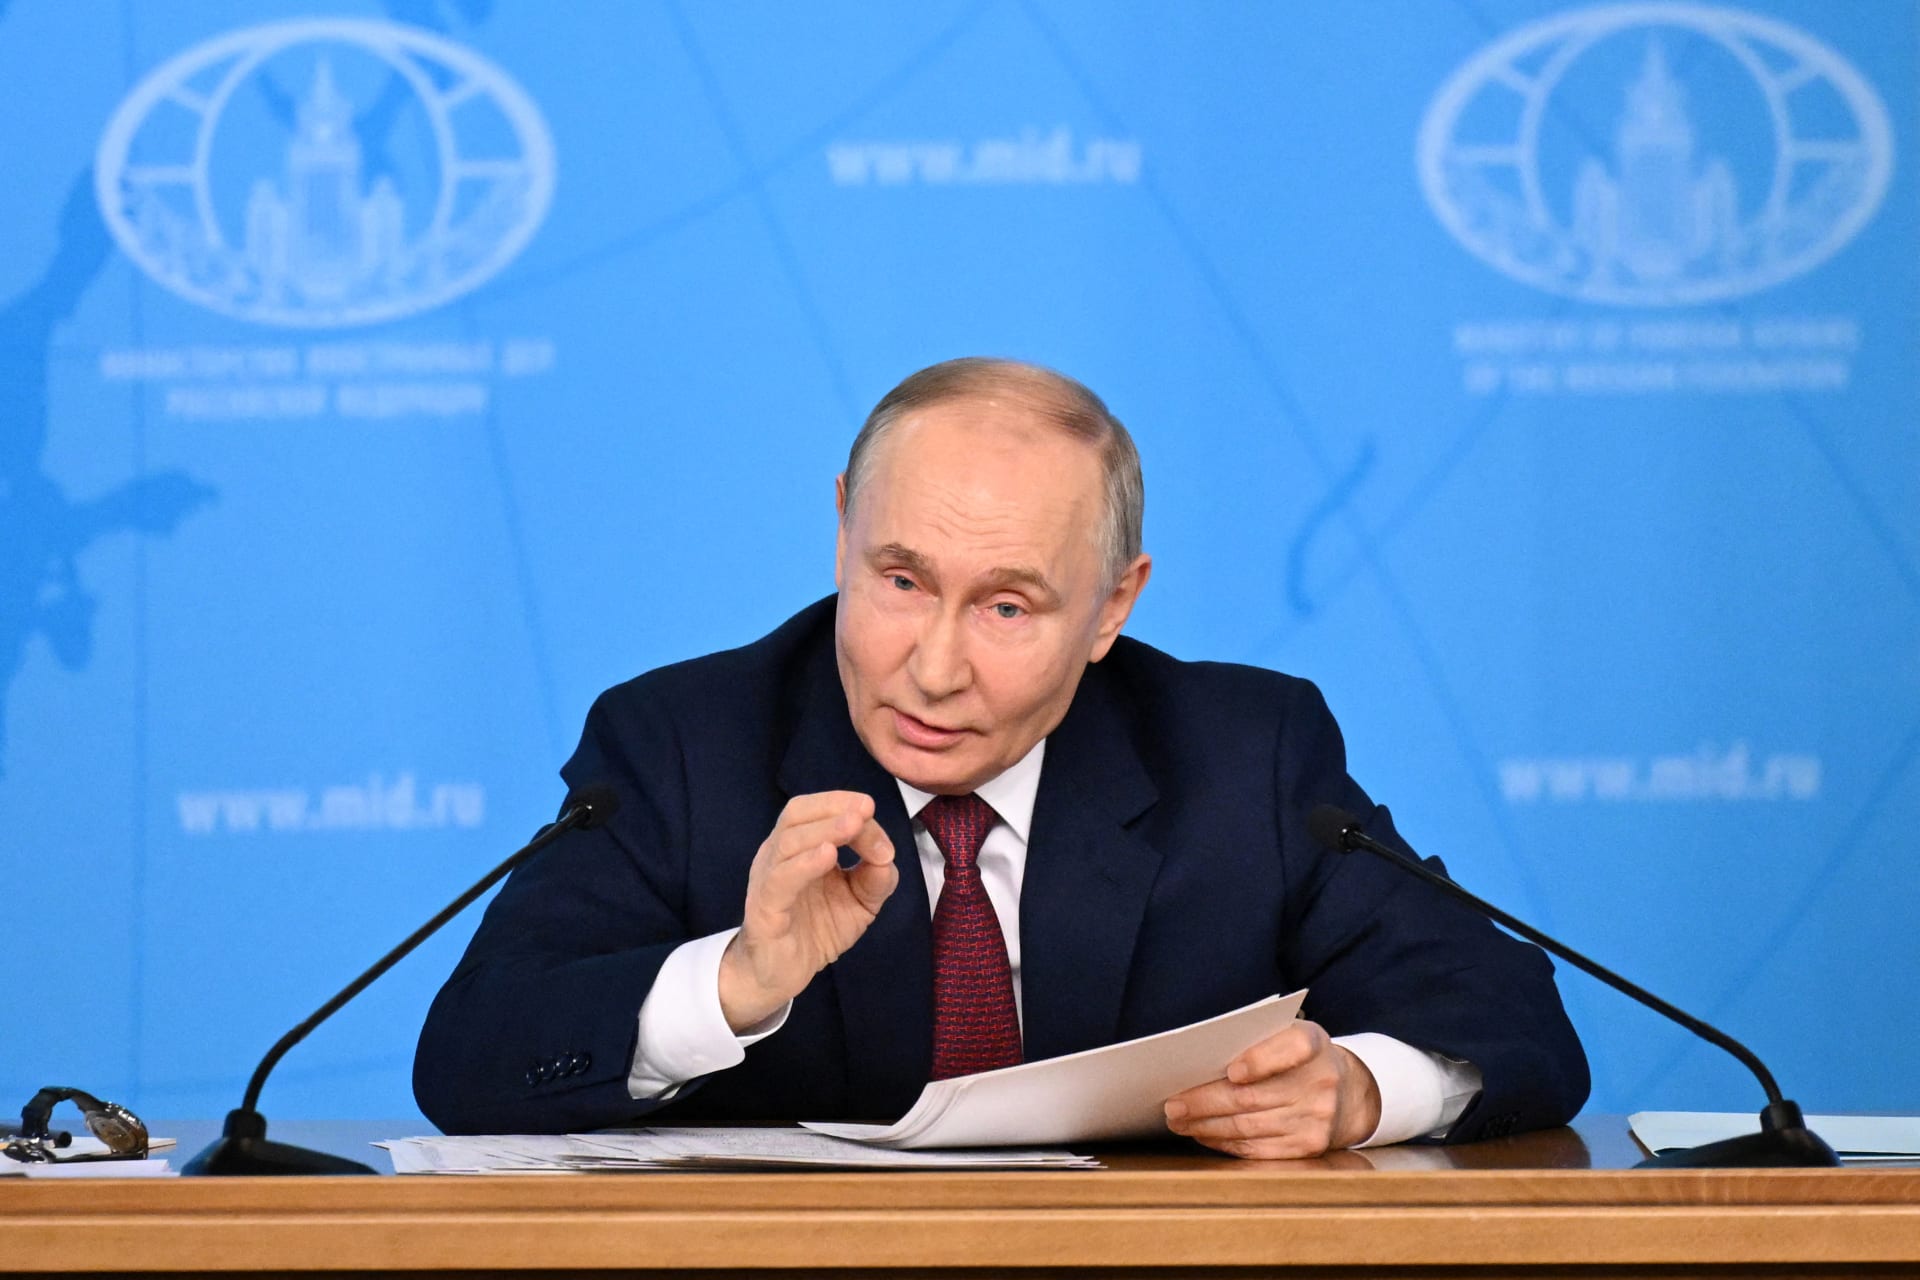 بوتين يحذر: الغرب يقترب من "نقطة اللاعودة".. والبحث عن هزيمة استراتيجية روسيا سيتحول إلى "مأساة"